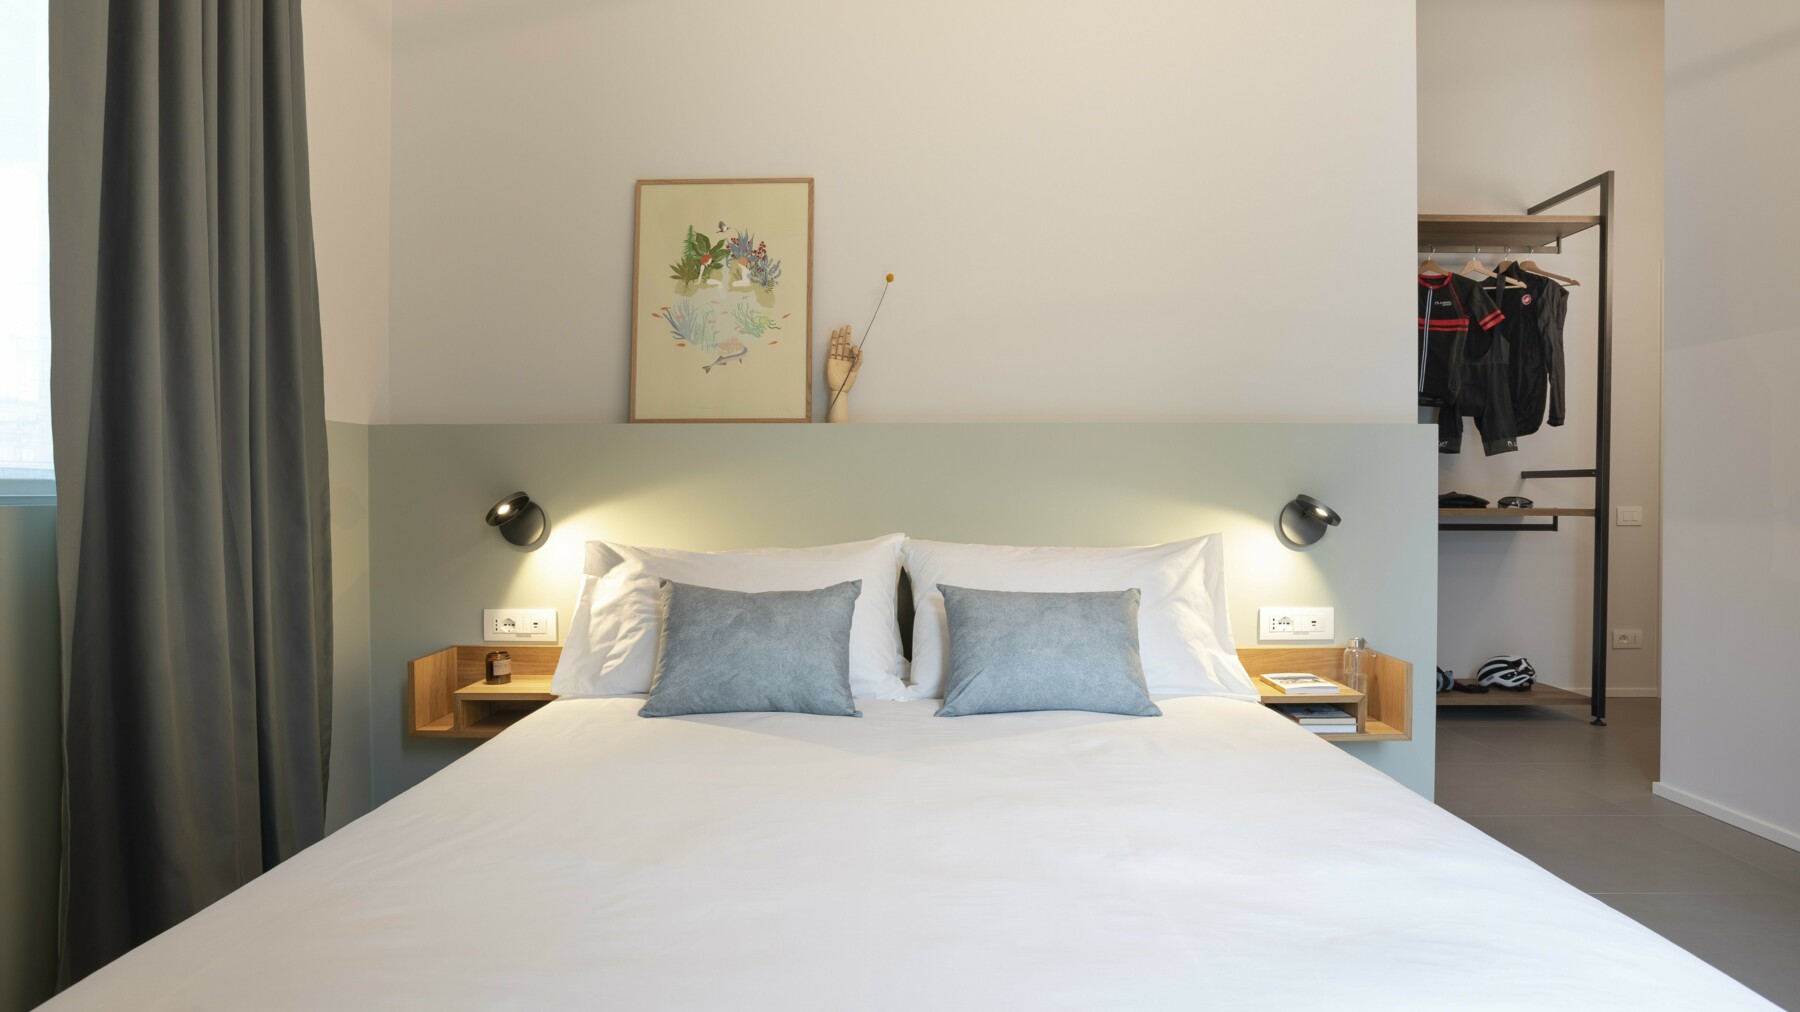 In den Hotelzimmern sollen sich die Gäste rundum wohl fühlen und unterstützen gleichzeitig die nachhaltige Bauweise made of LIGNO®.